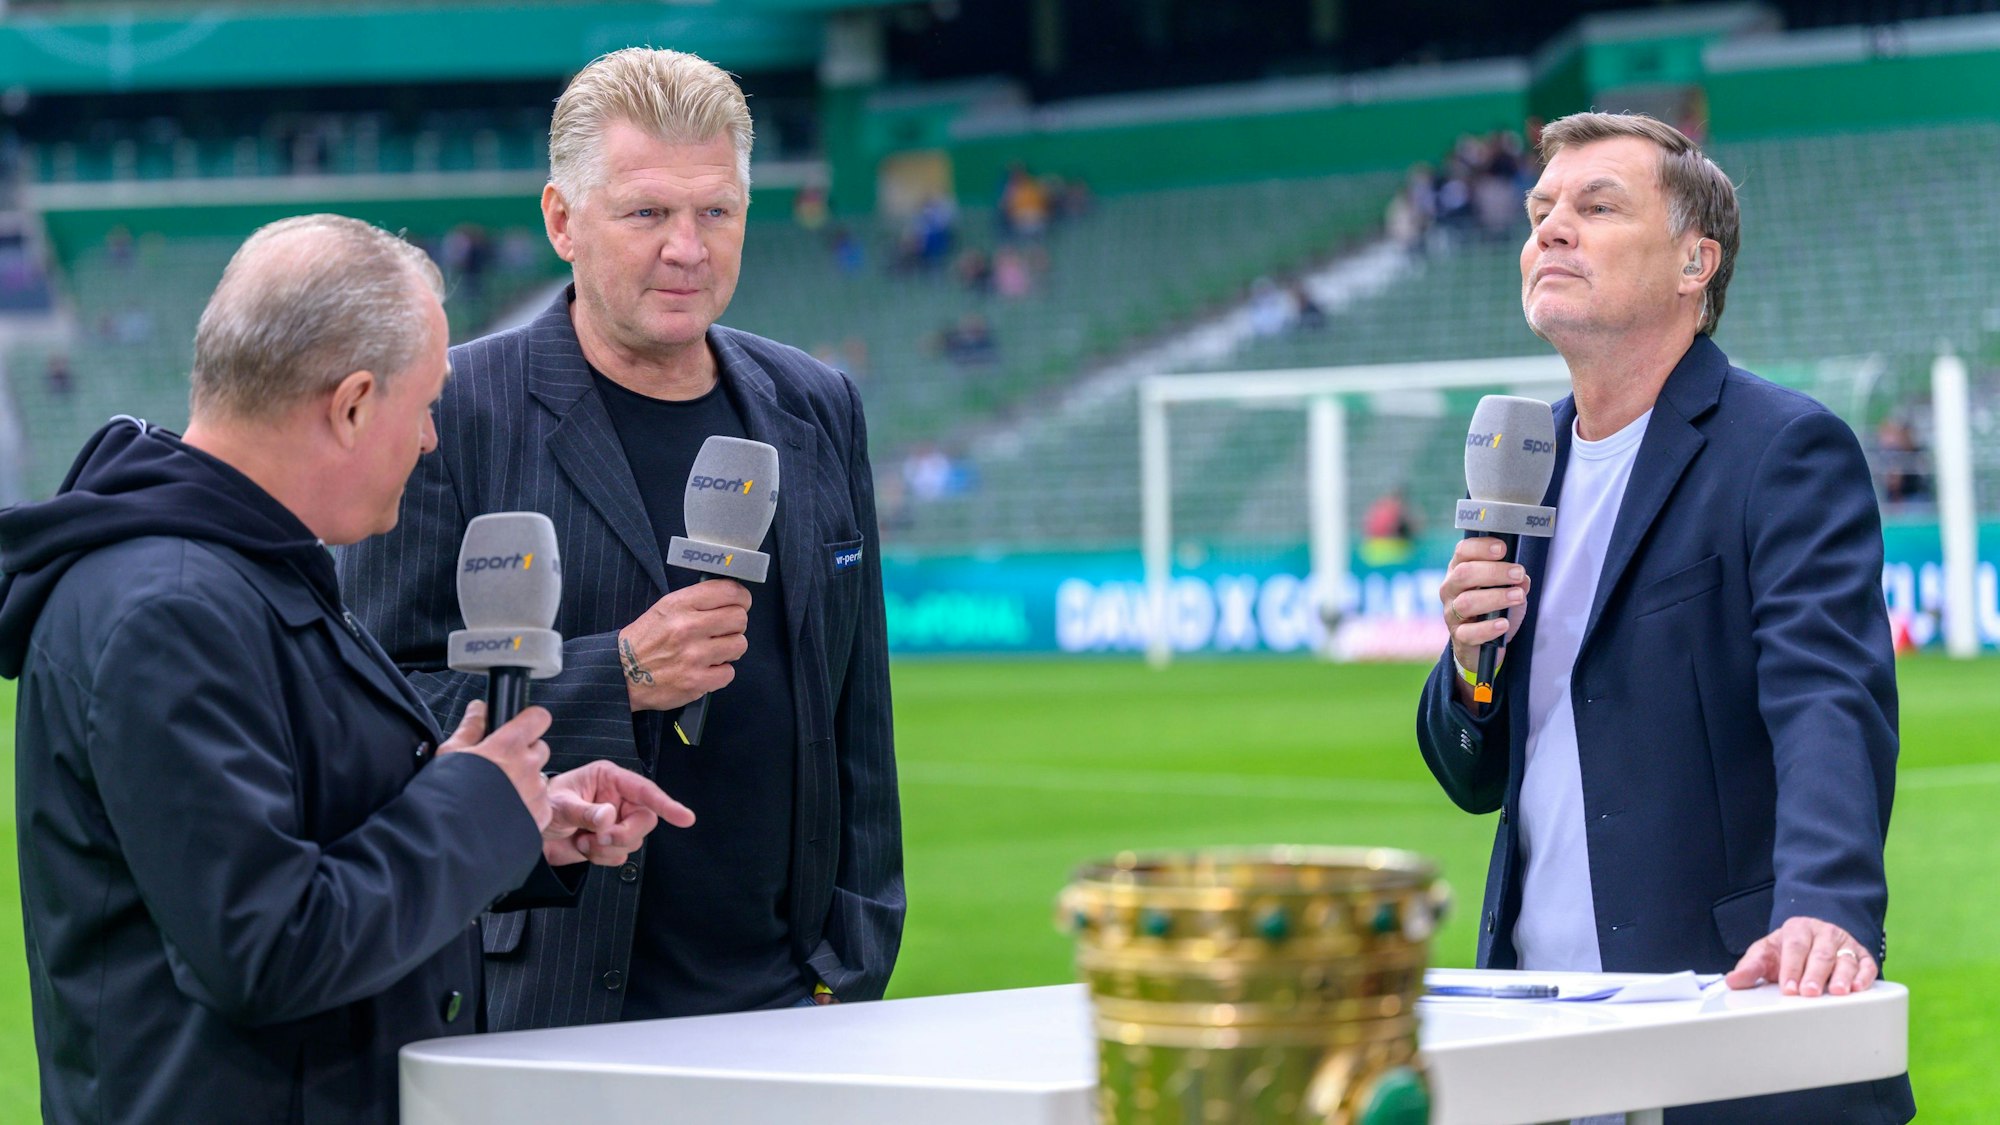 Kommentator Markus Höhner spricht mit den Experten und Ex-Fußballprofis Stefan Effenberg und Thomas Helmer.